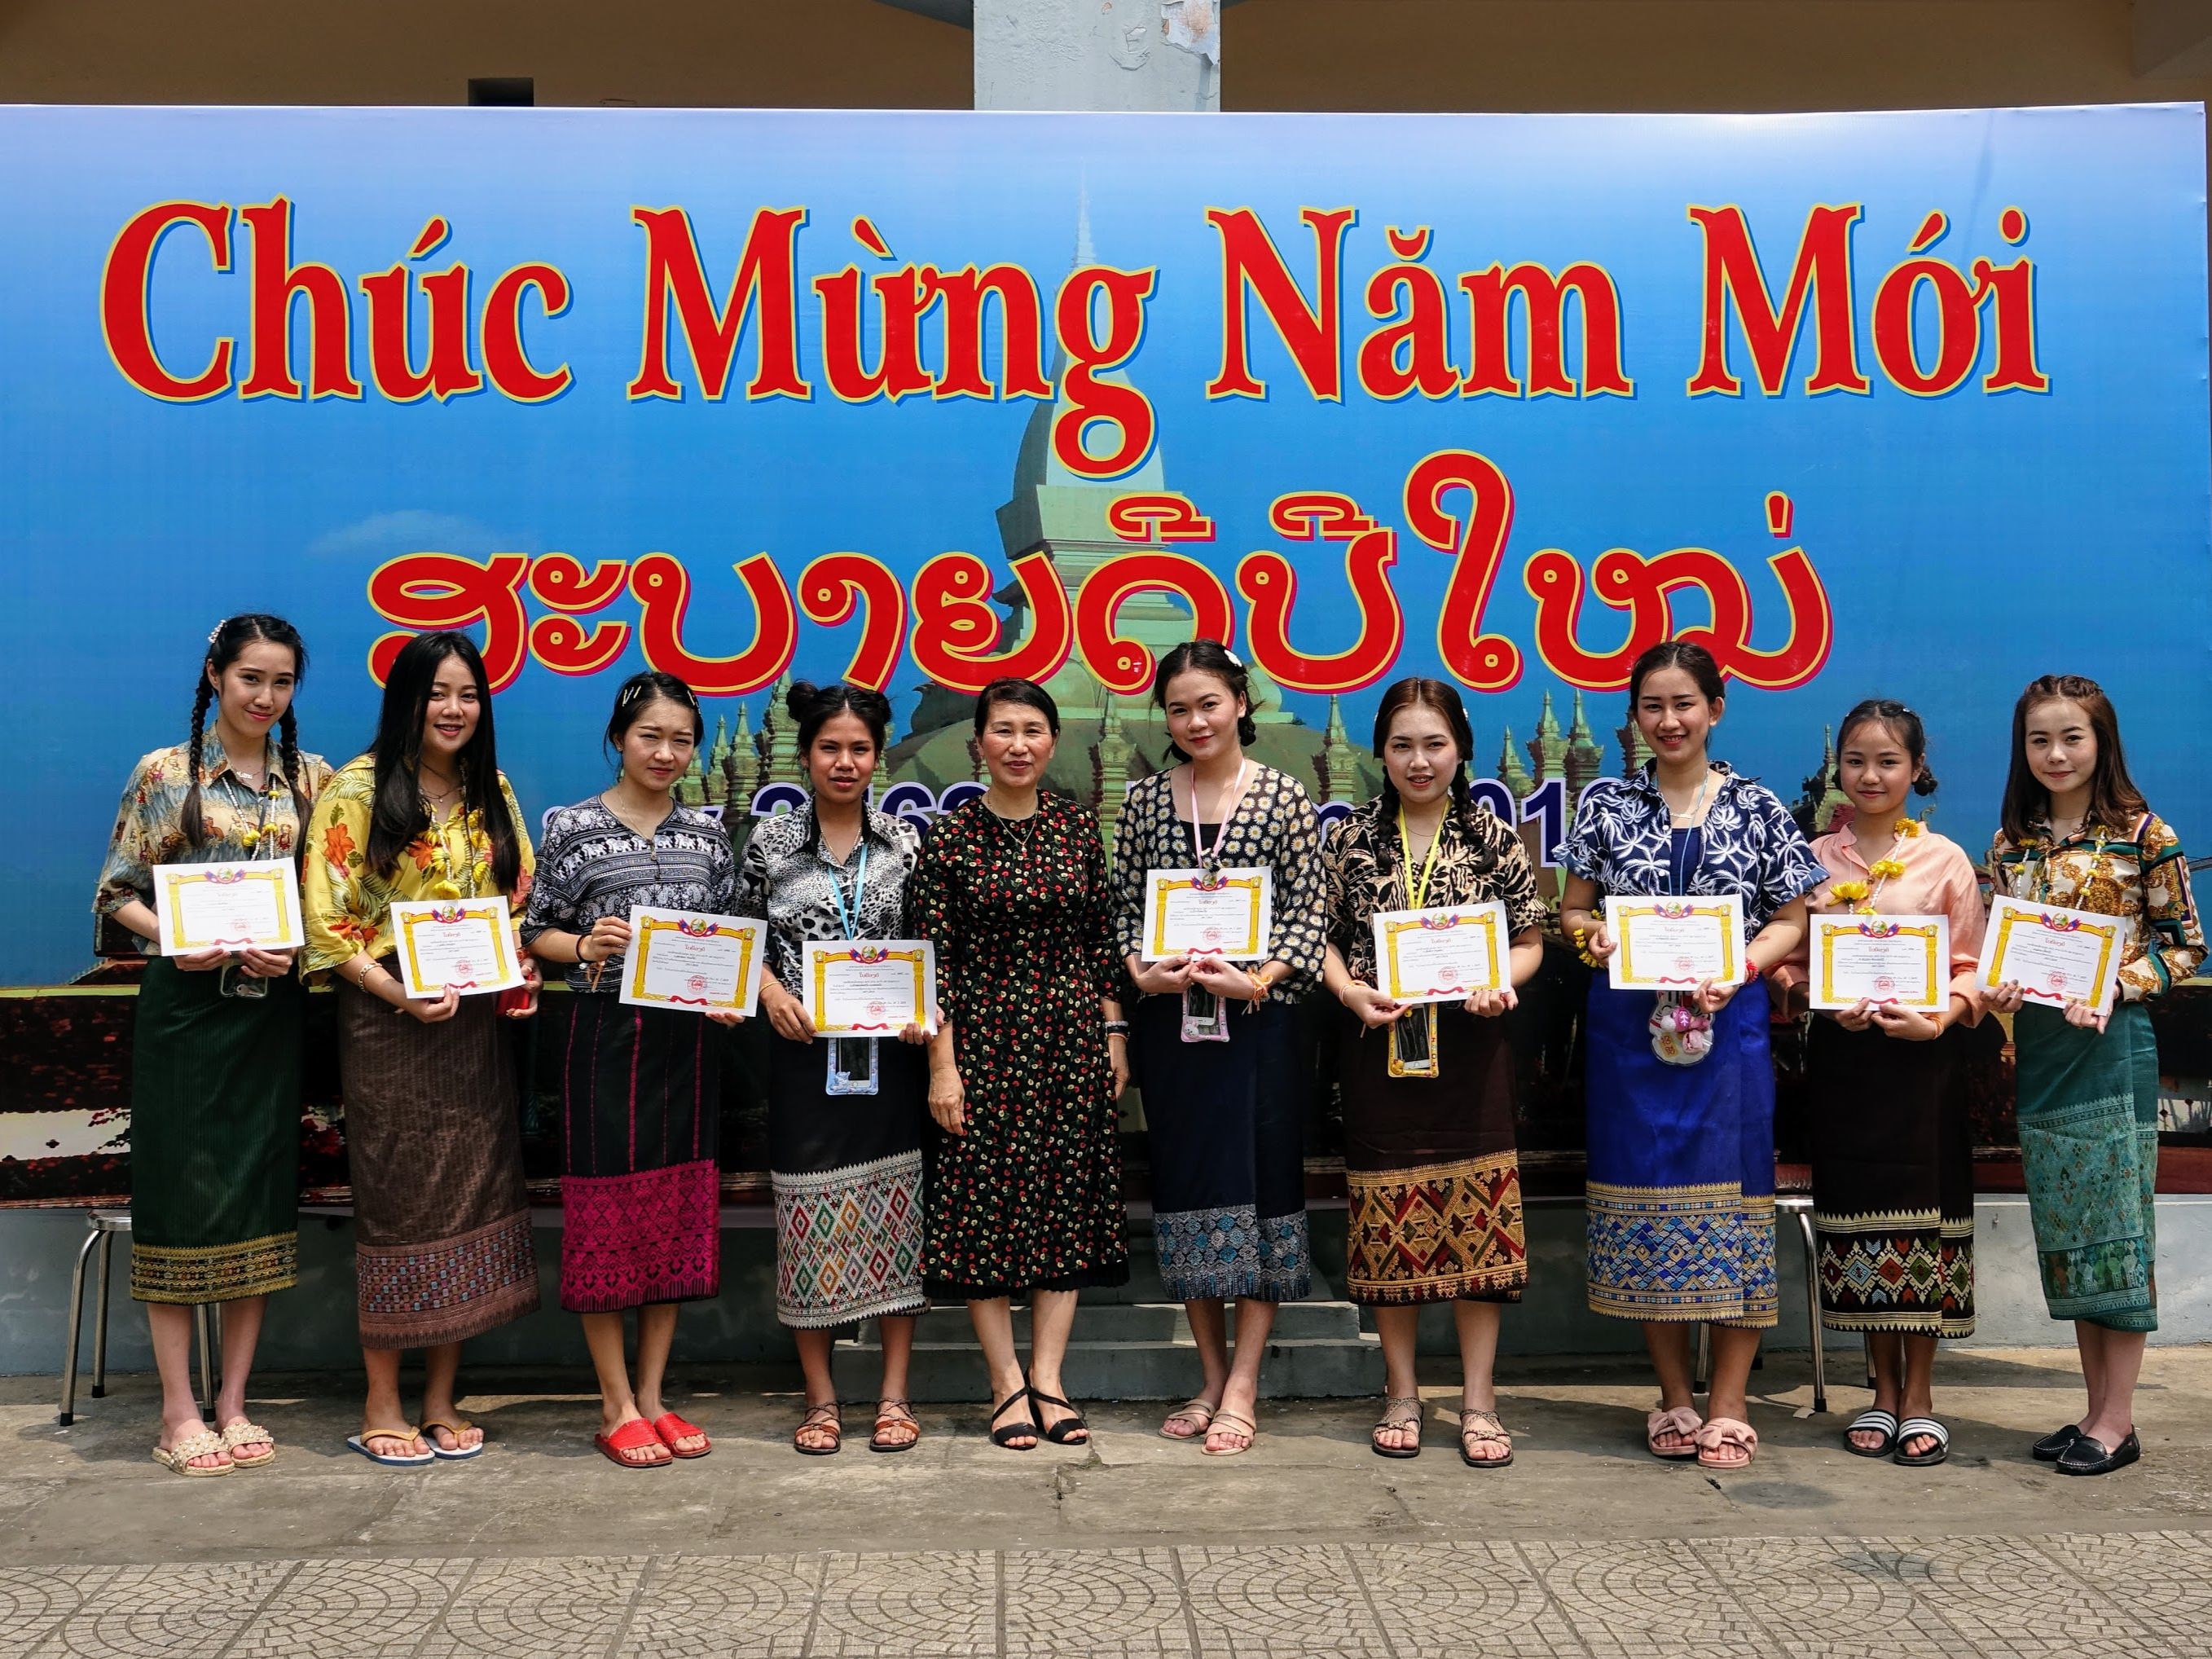 Lưu học sinh Lào vui tết cổ truyền tại Đại học Công nghiệp Hà Nội